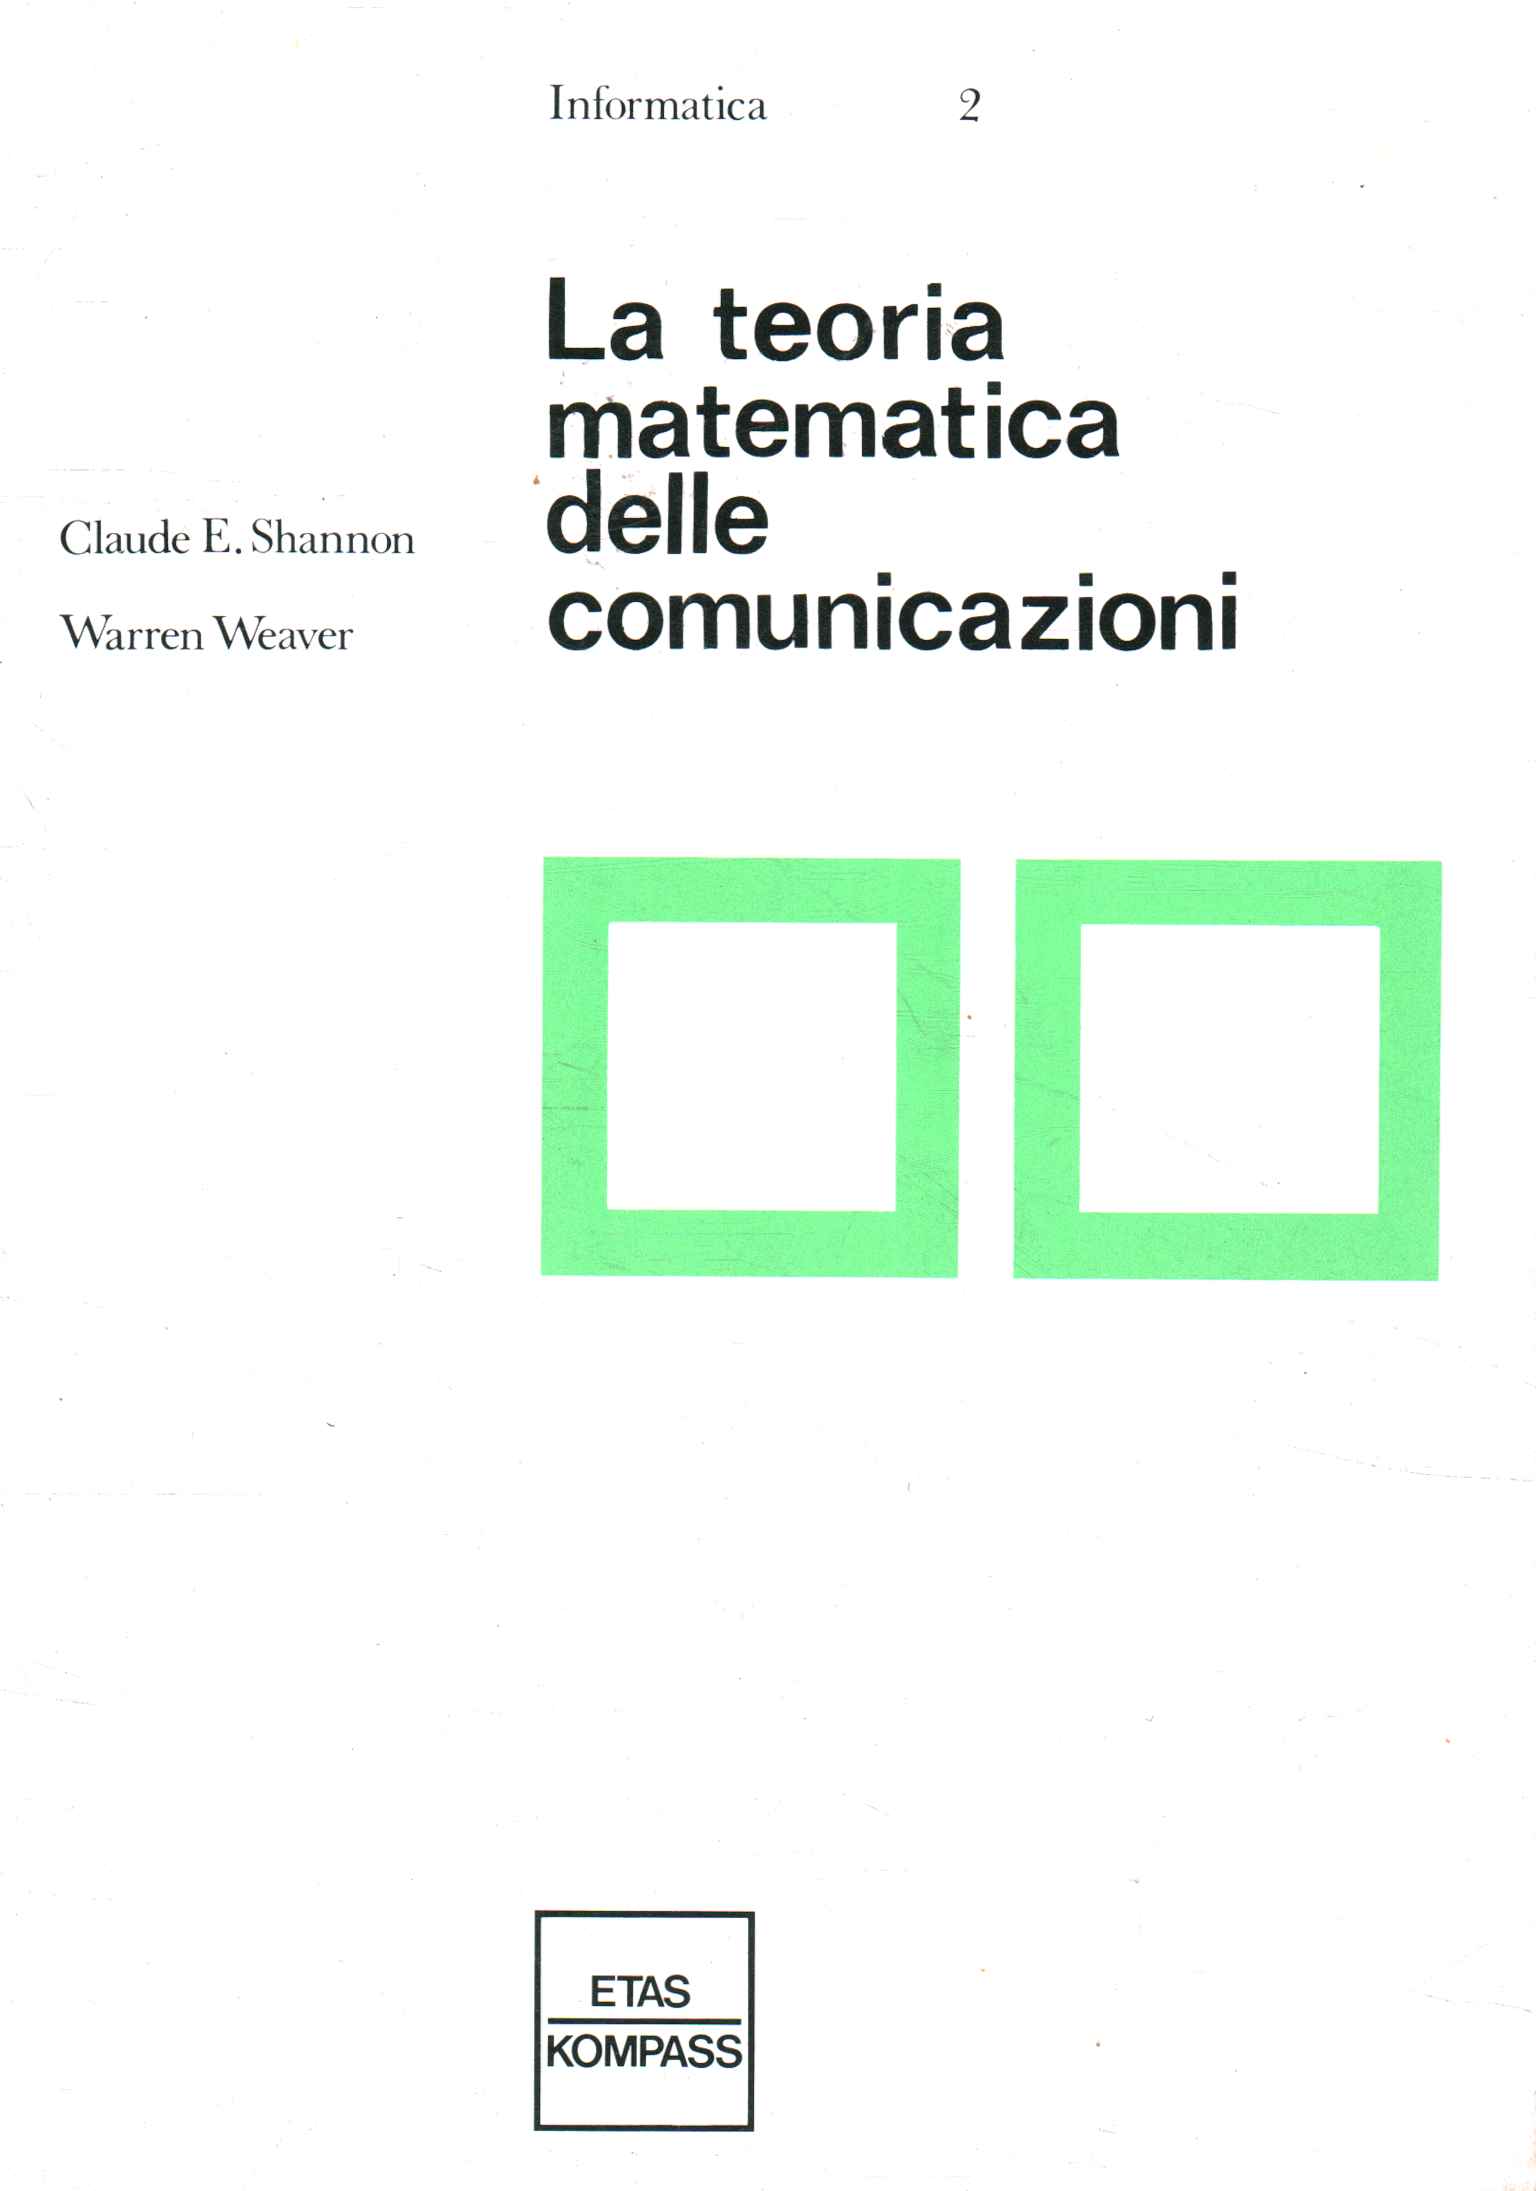 La teoria matematica delle comunicazioni